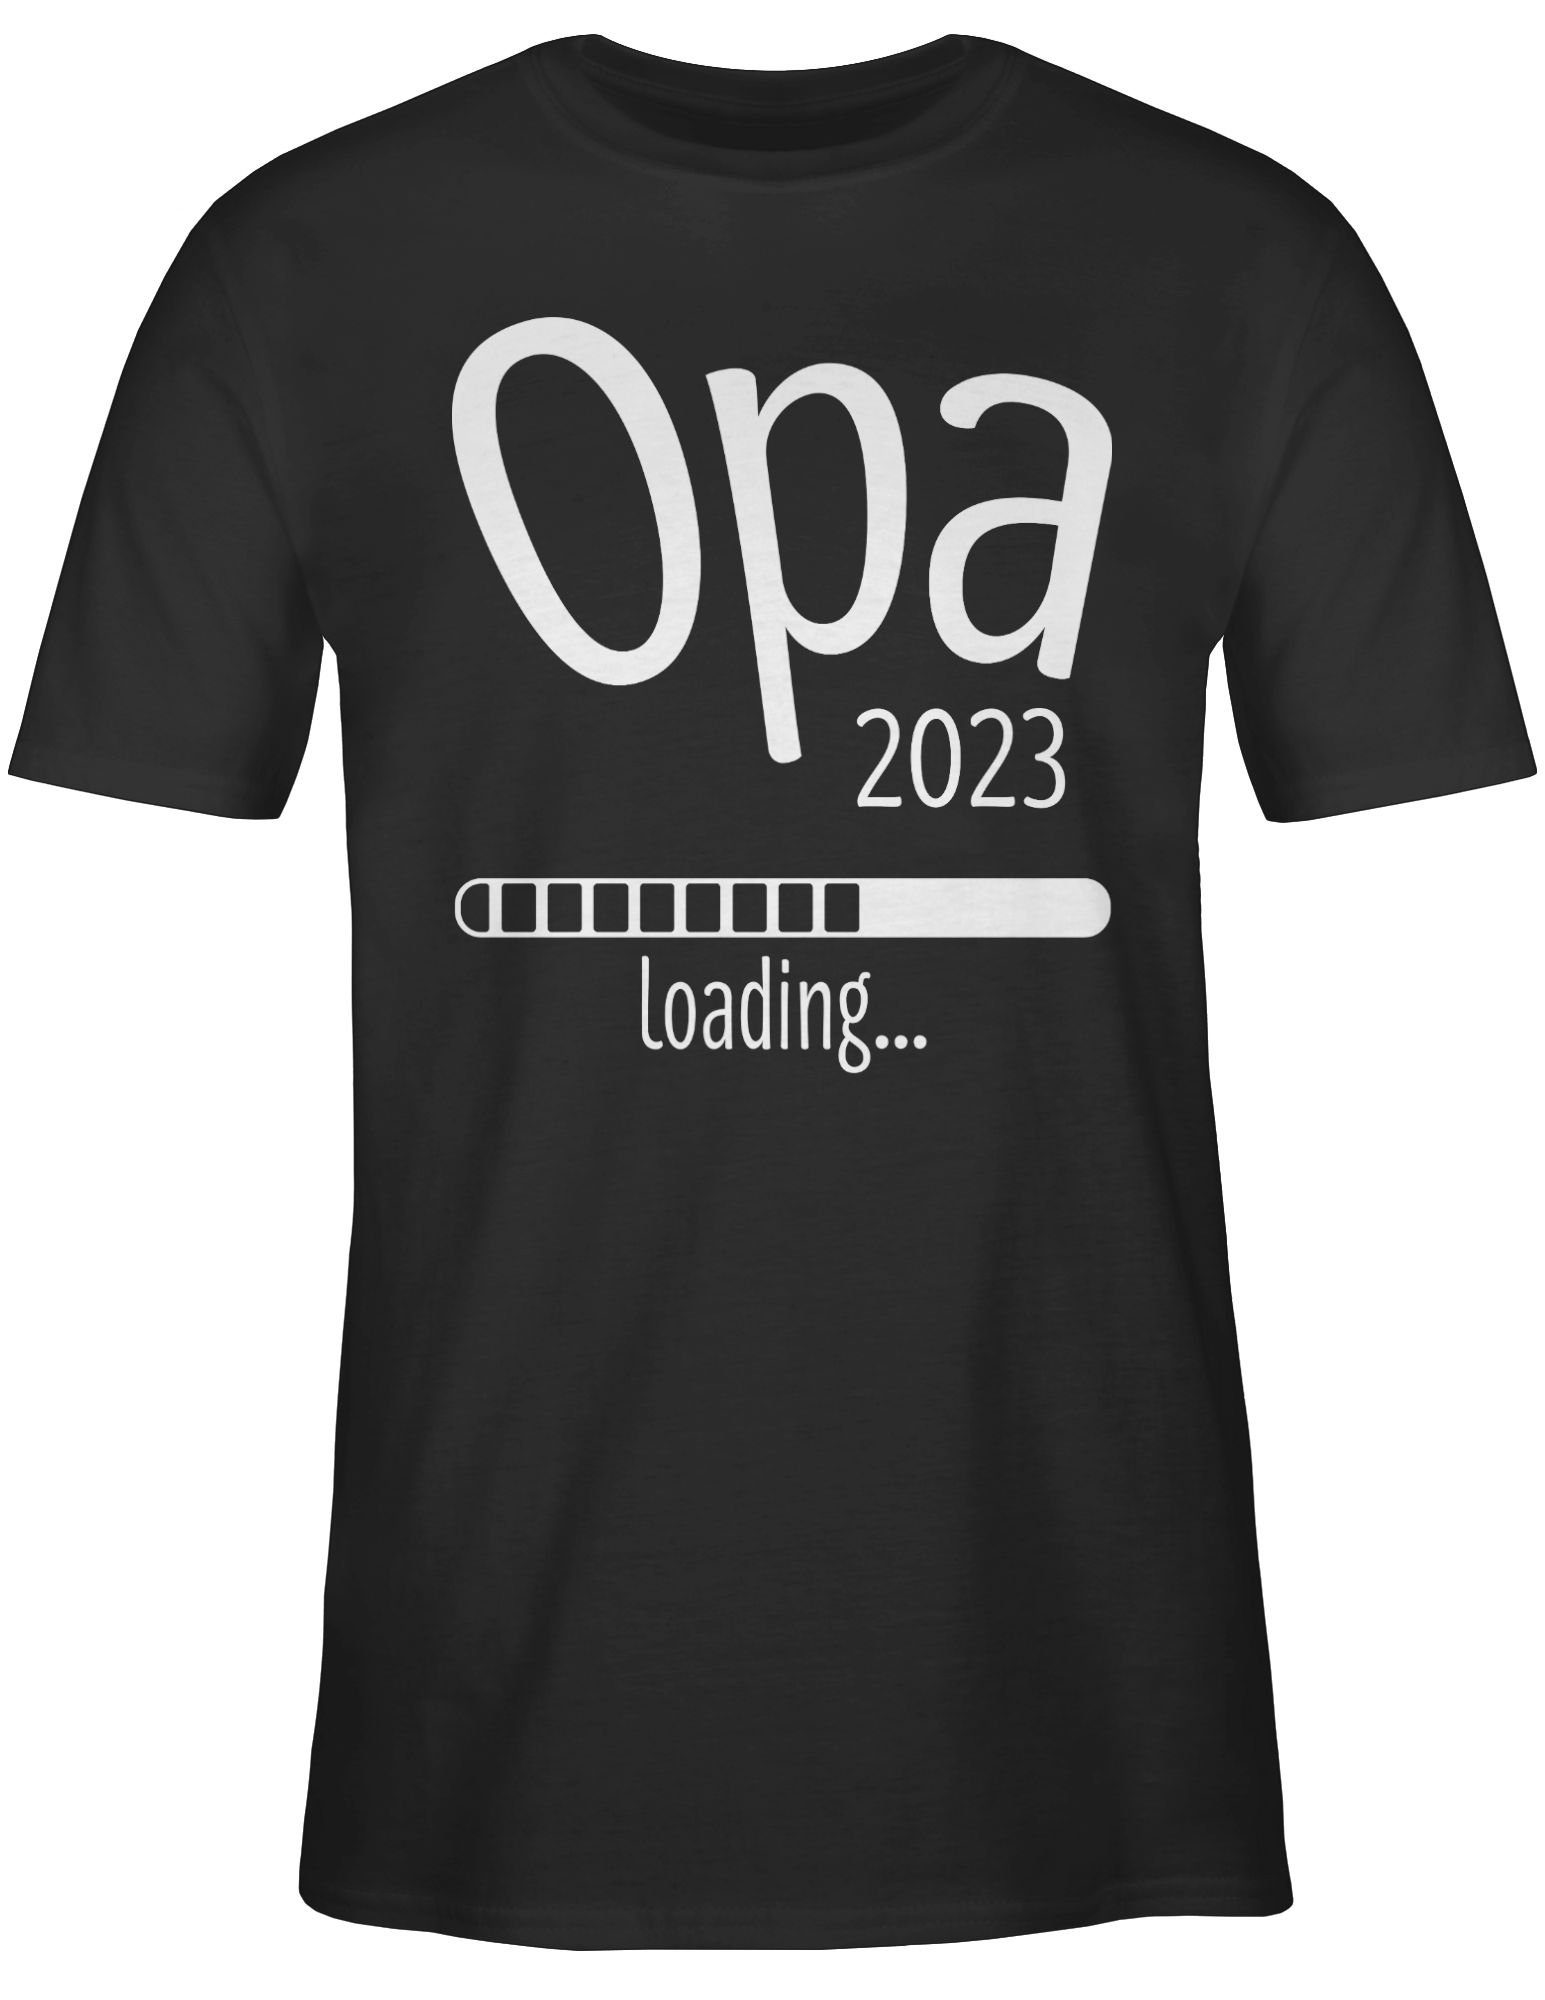 Shirtracer Geschenke 1 Schwarz Opa T-Shirt Opa loading 2023